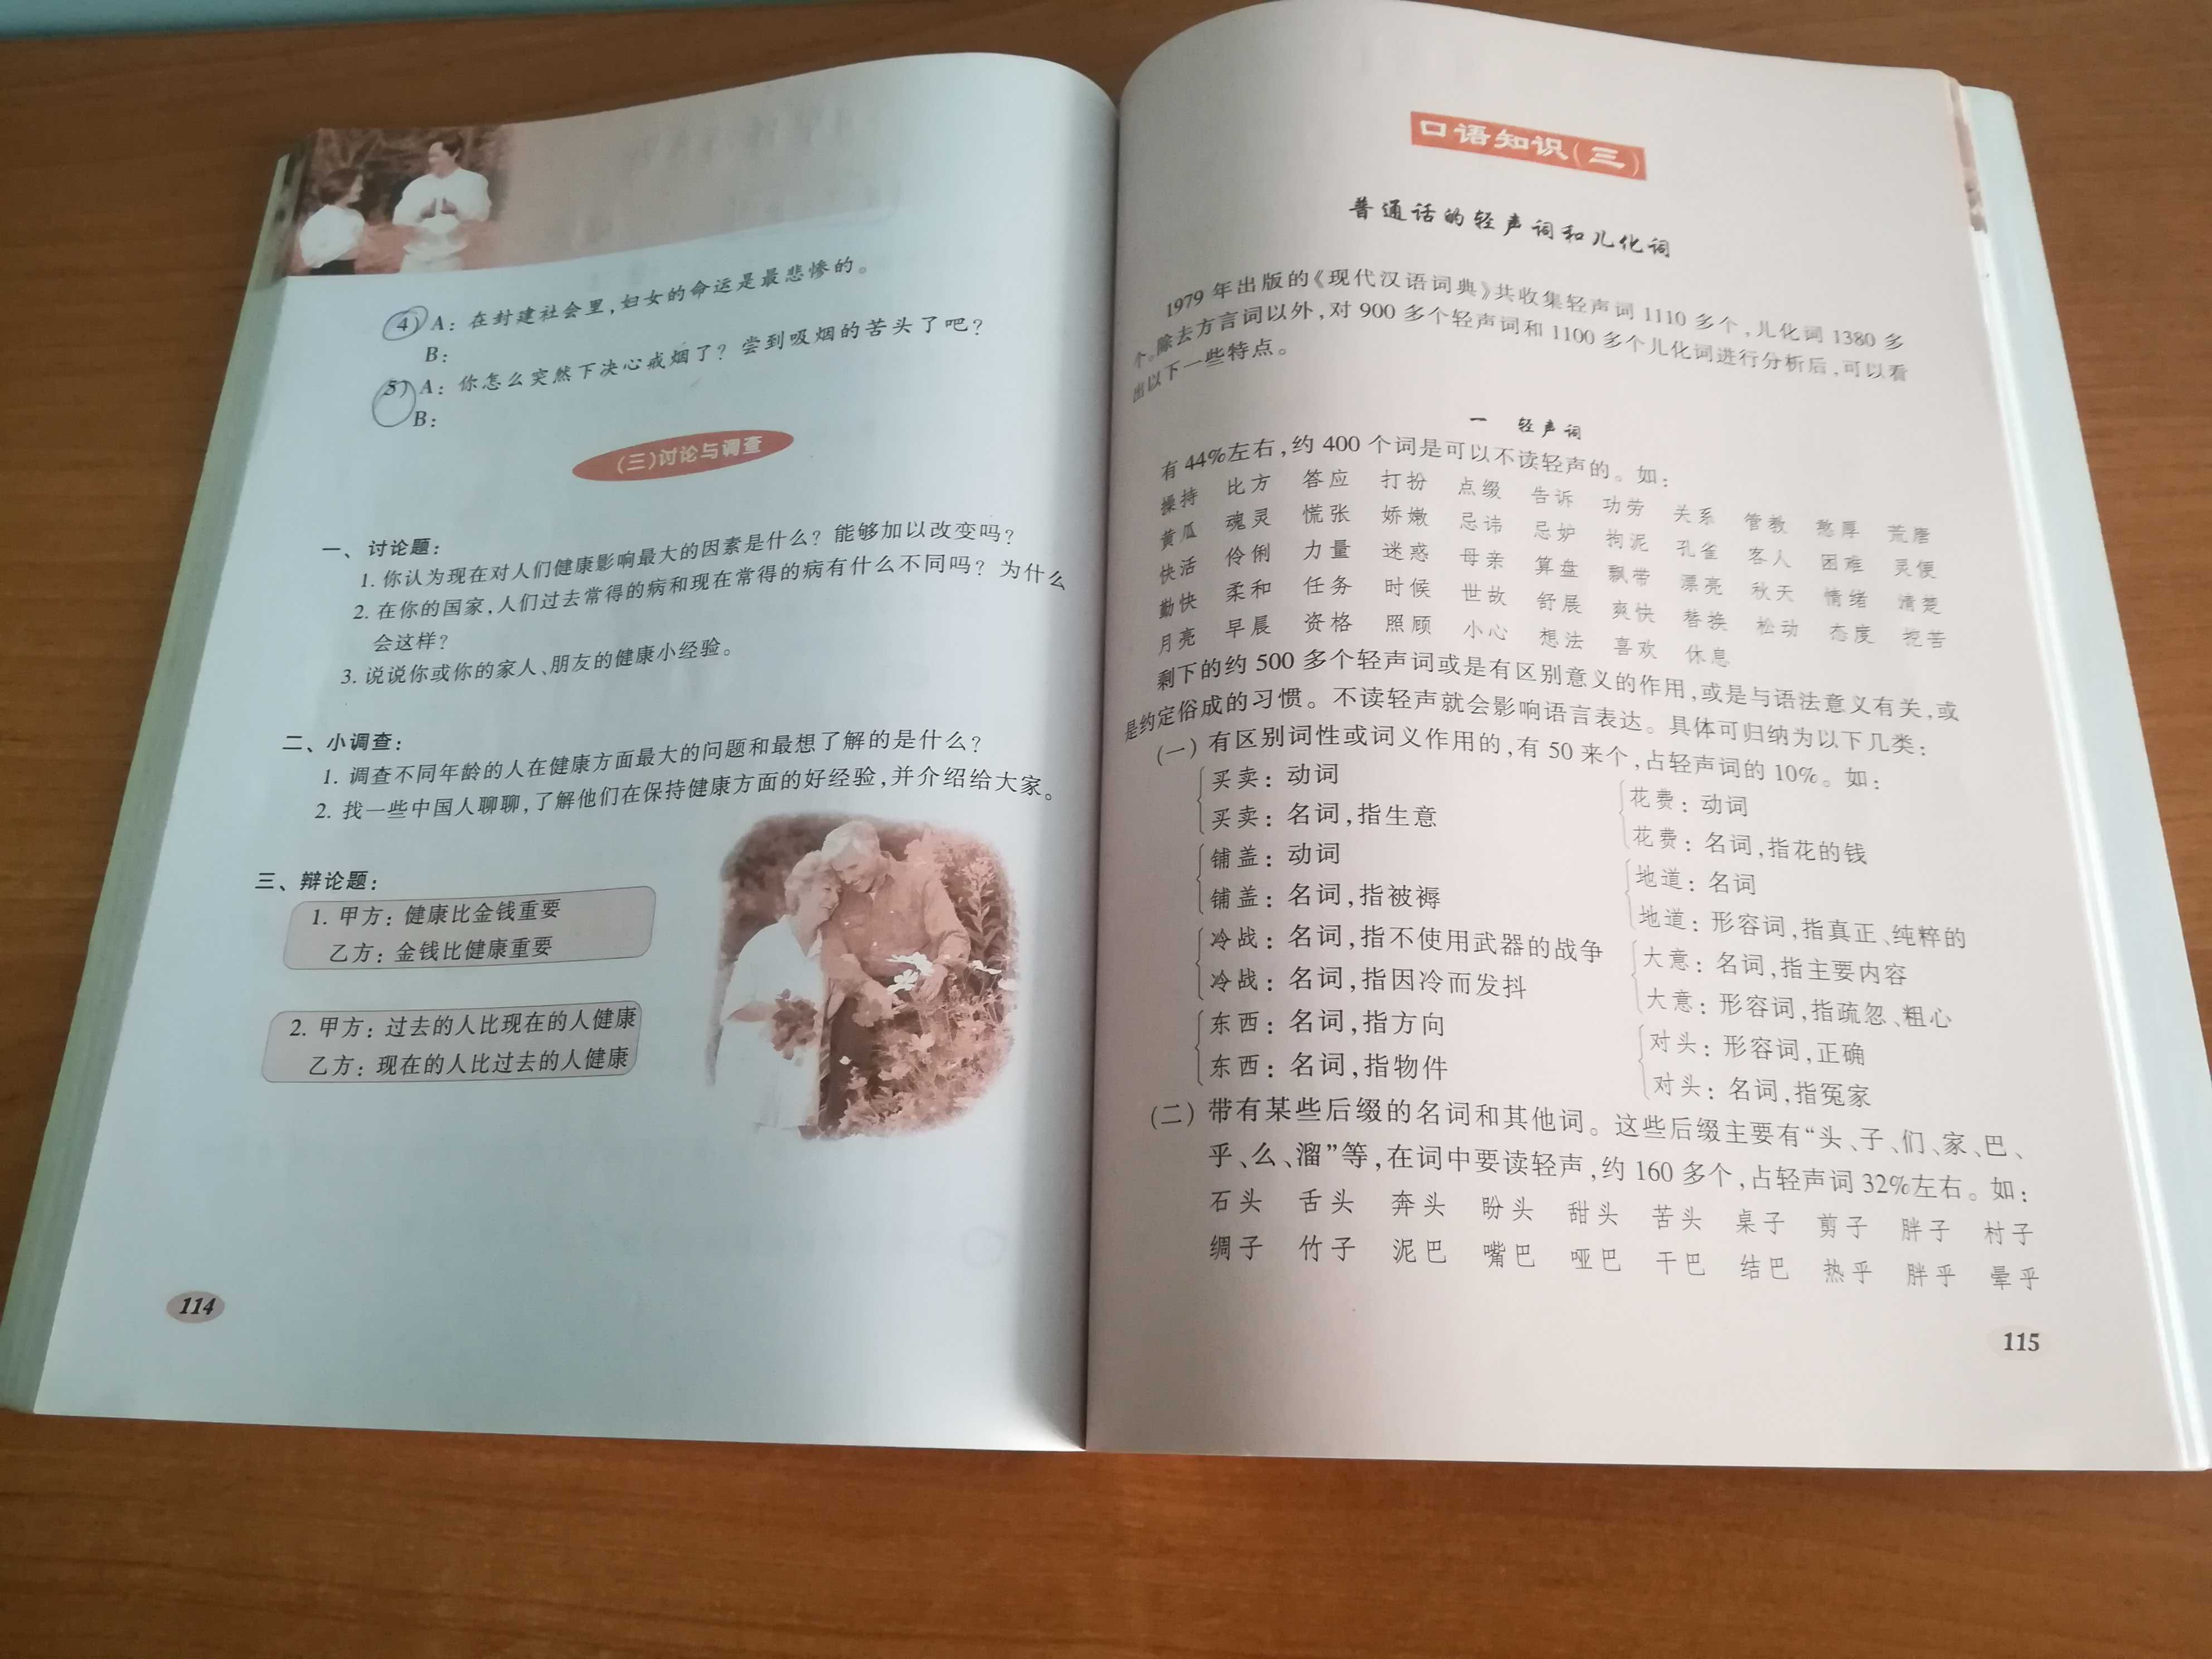 Advanced Spoken Chinese, 高级汉语口语 2，Liu Yuanman, Peking University Press